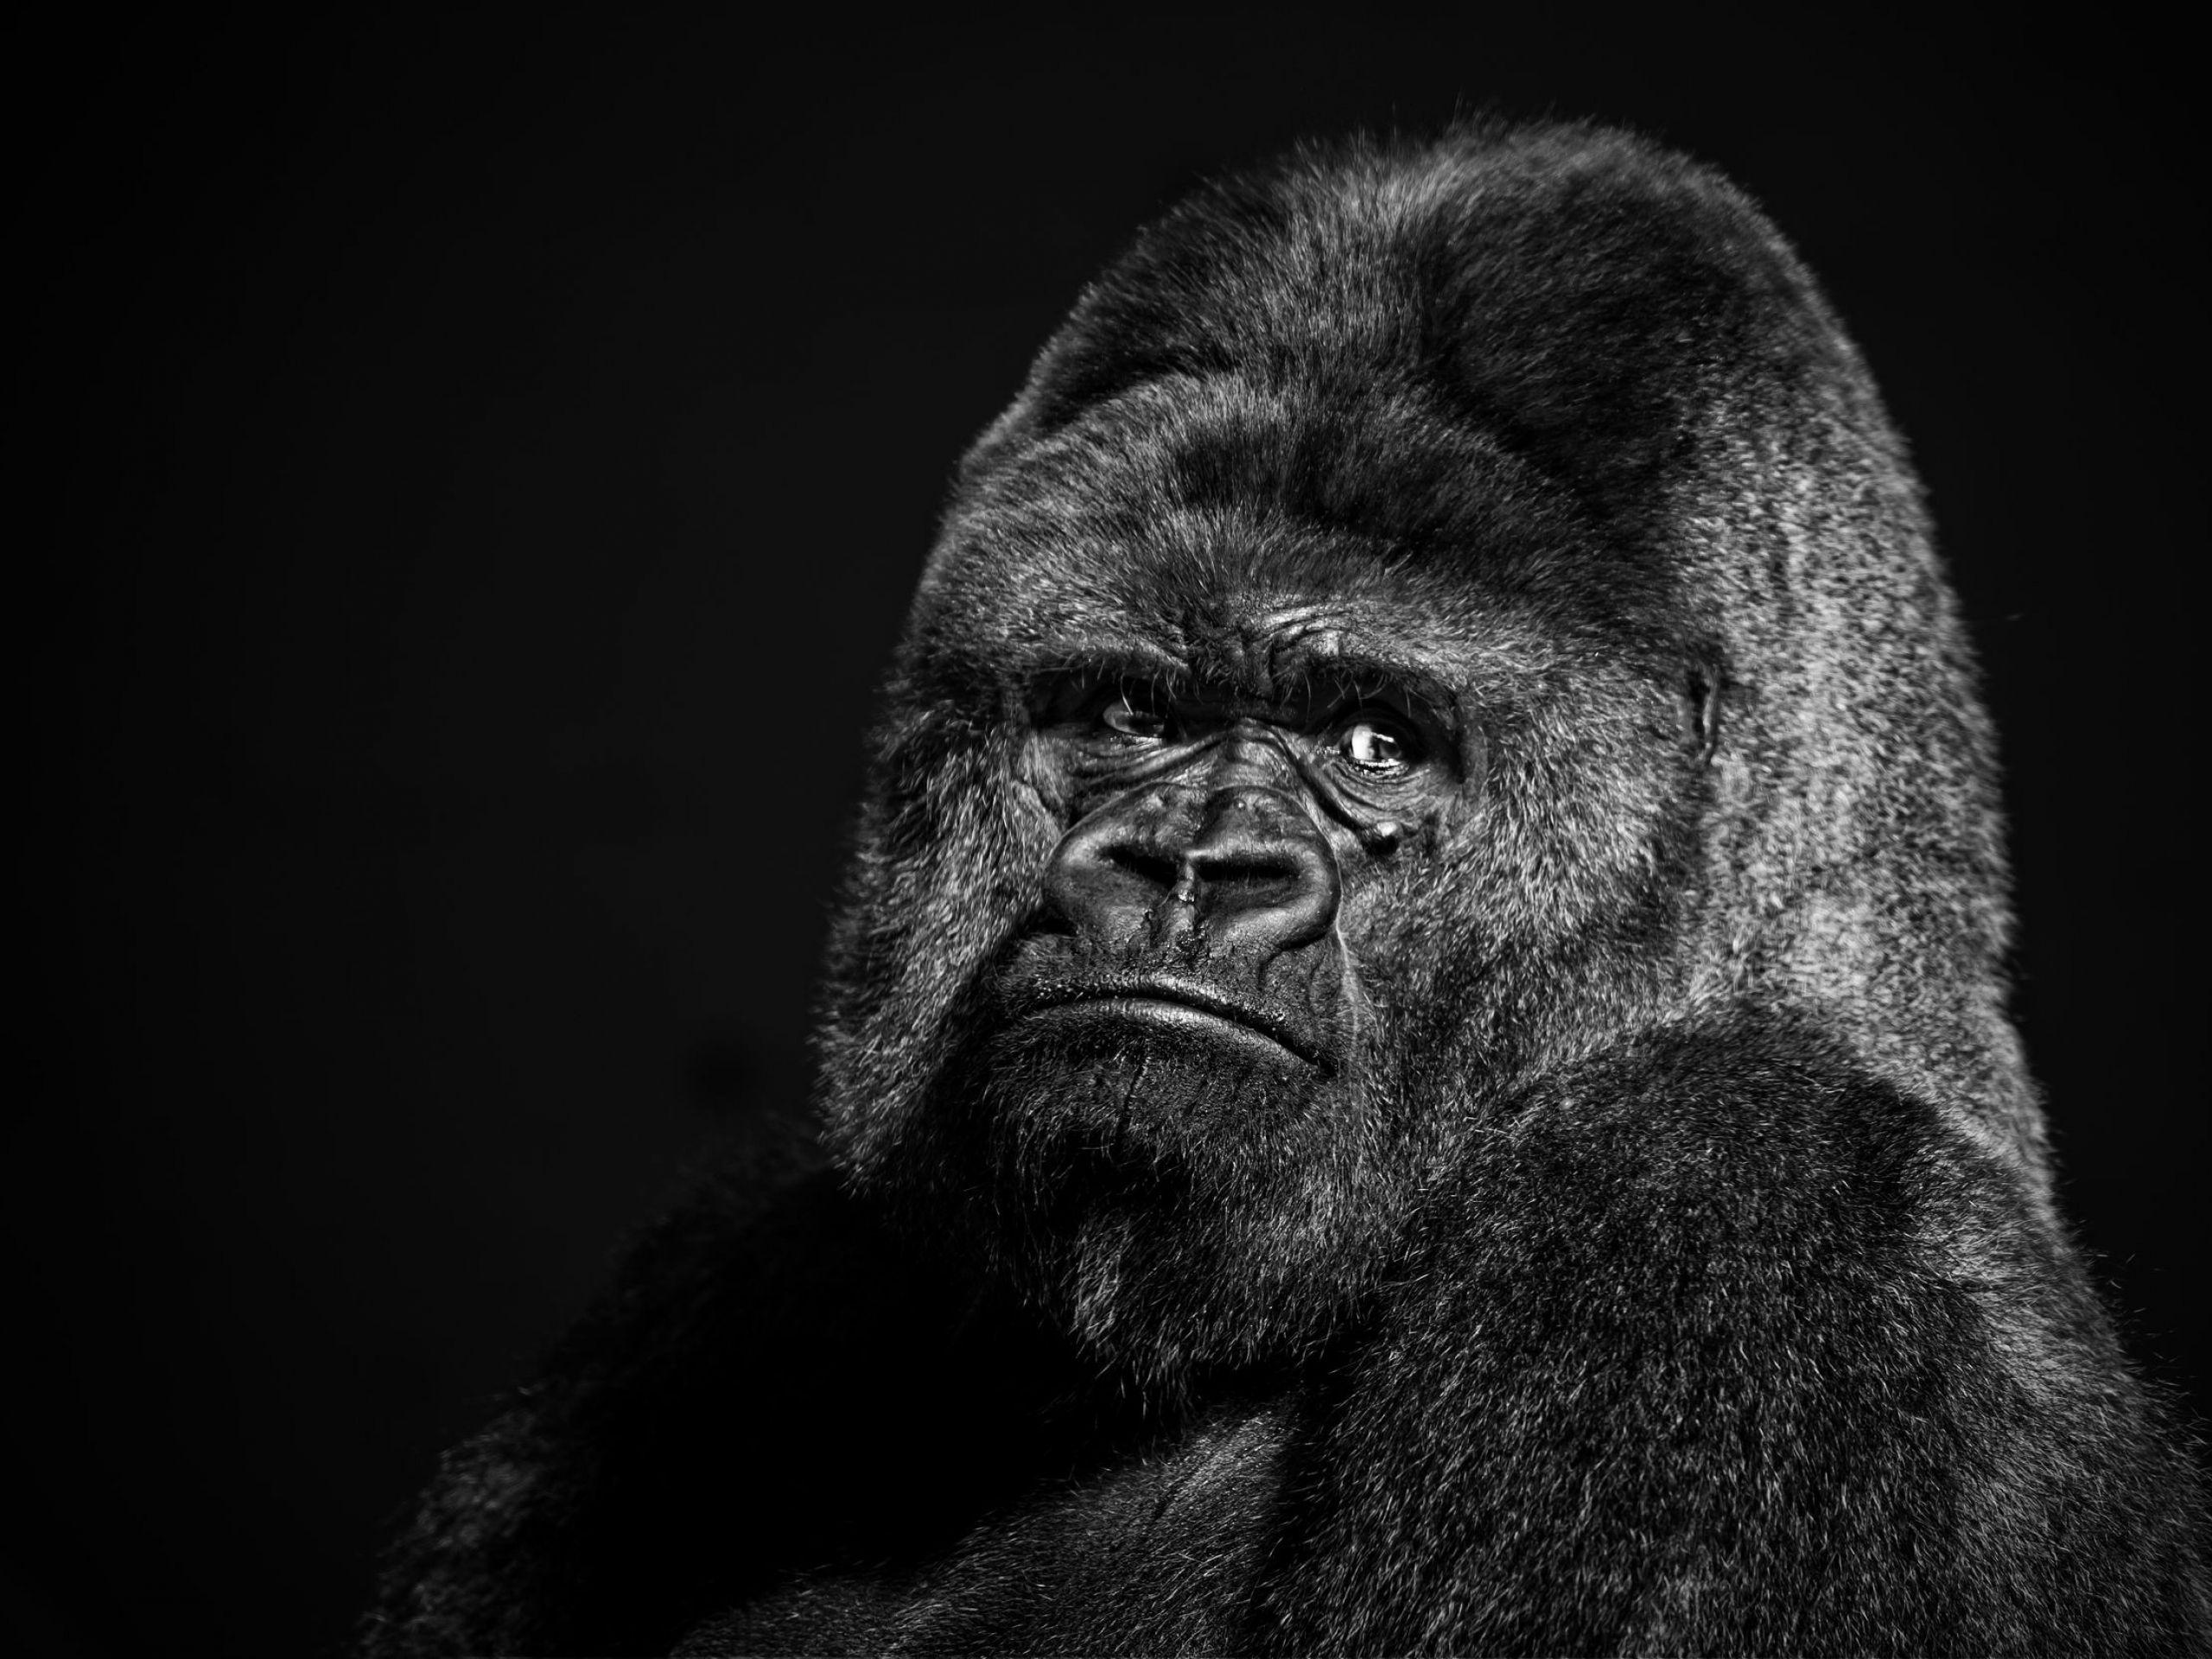 trippy gorilla background